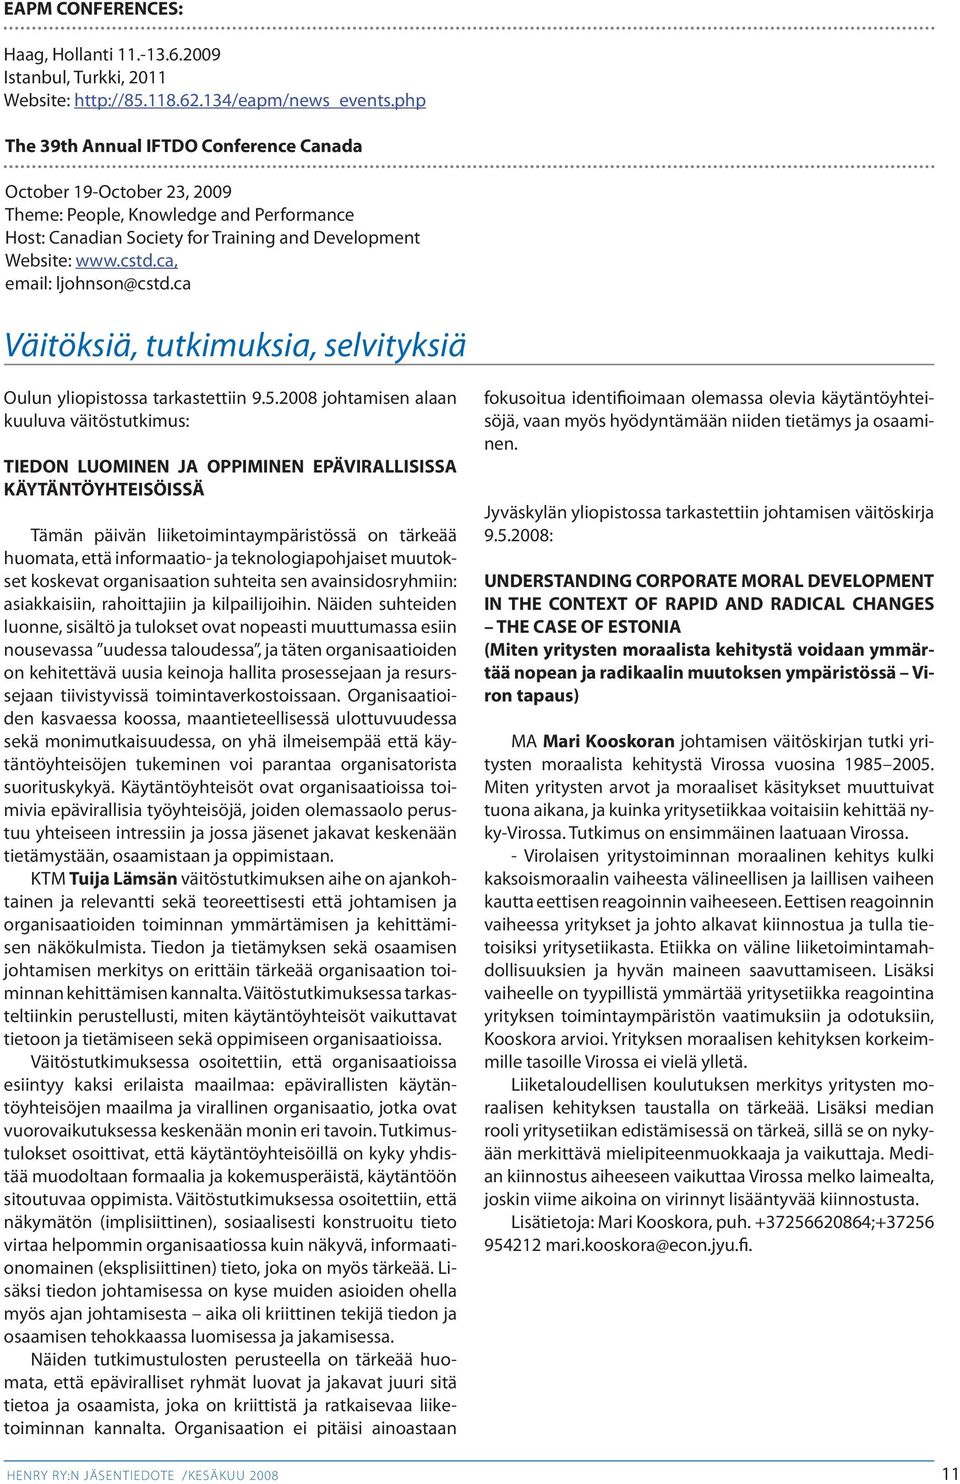 ca, email: ljohnson@cstd.ca Väitöksiä, tutkimuksia, selvityksiä Oulun yliopistossa tarkastettiin 9.5.